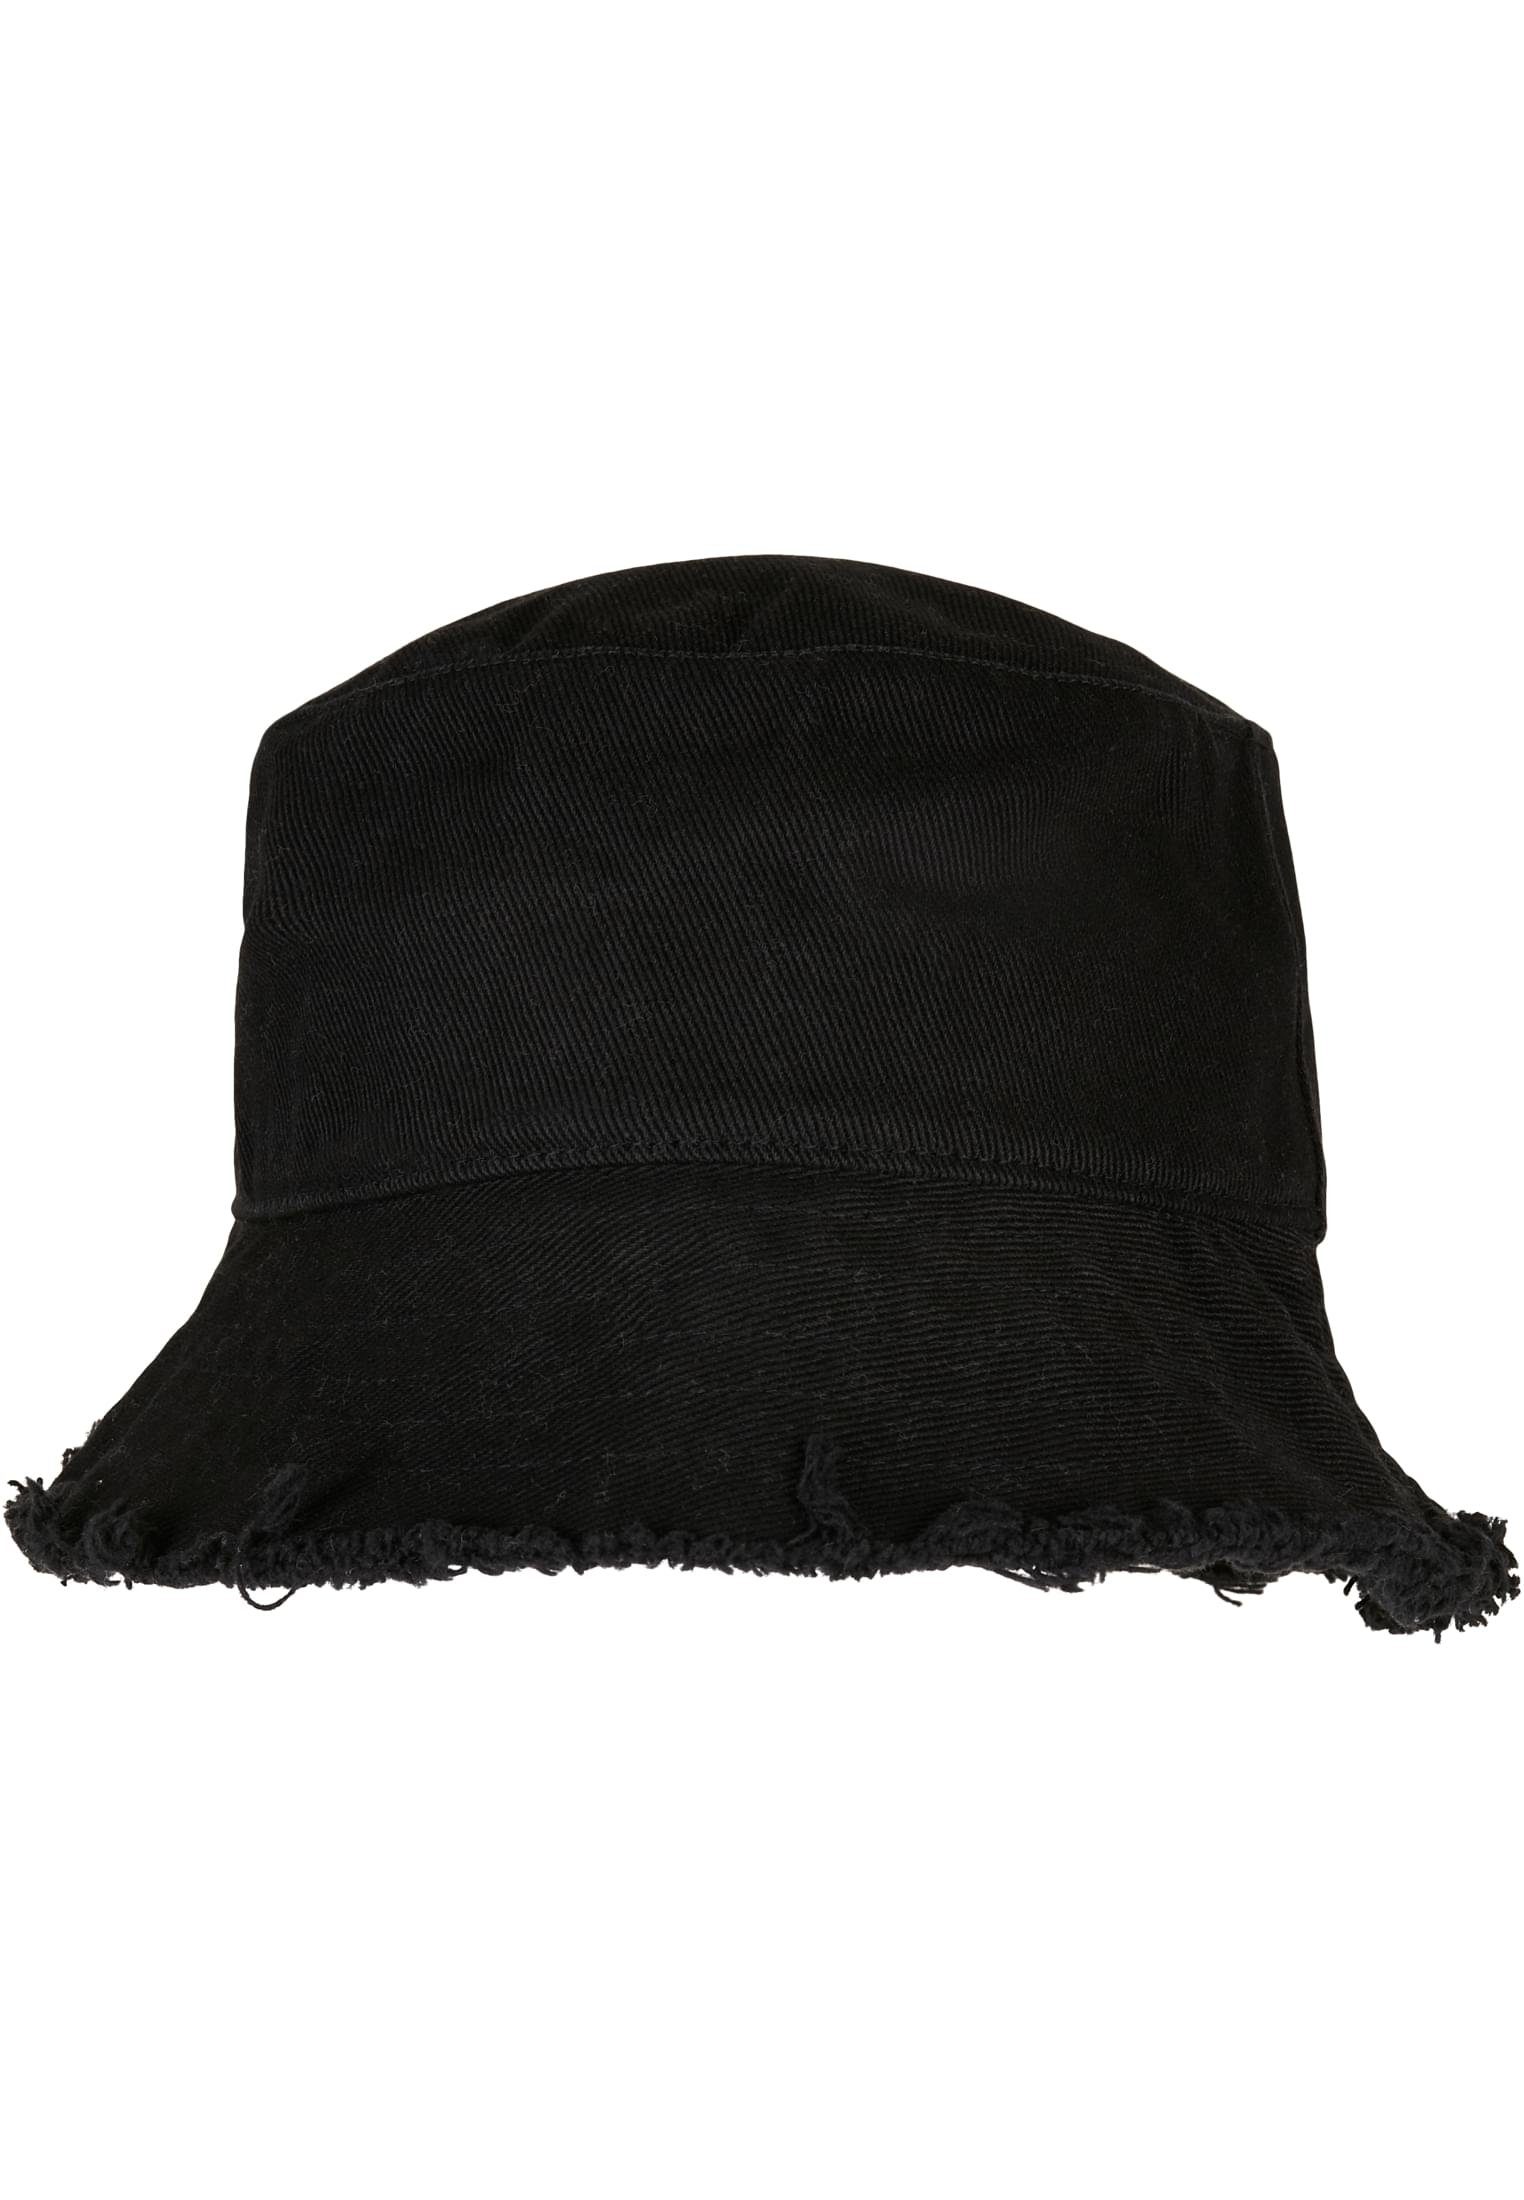 Flex Flexfit Edge Cap Accessoires black Open Hat Bucket